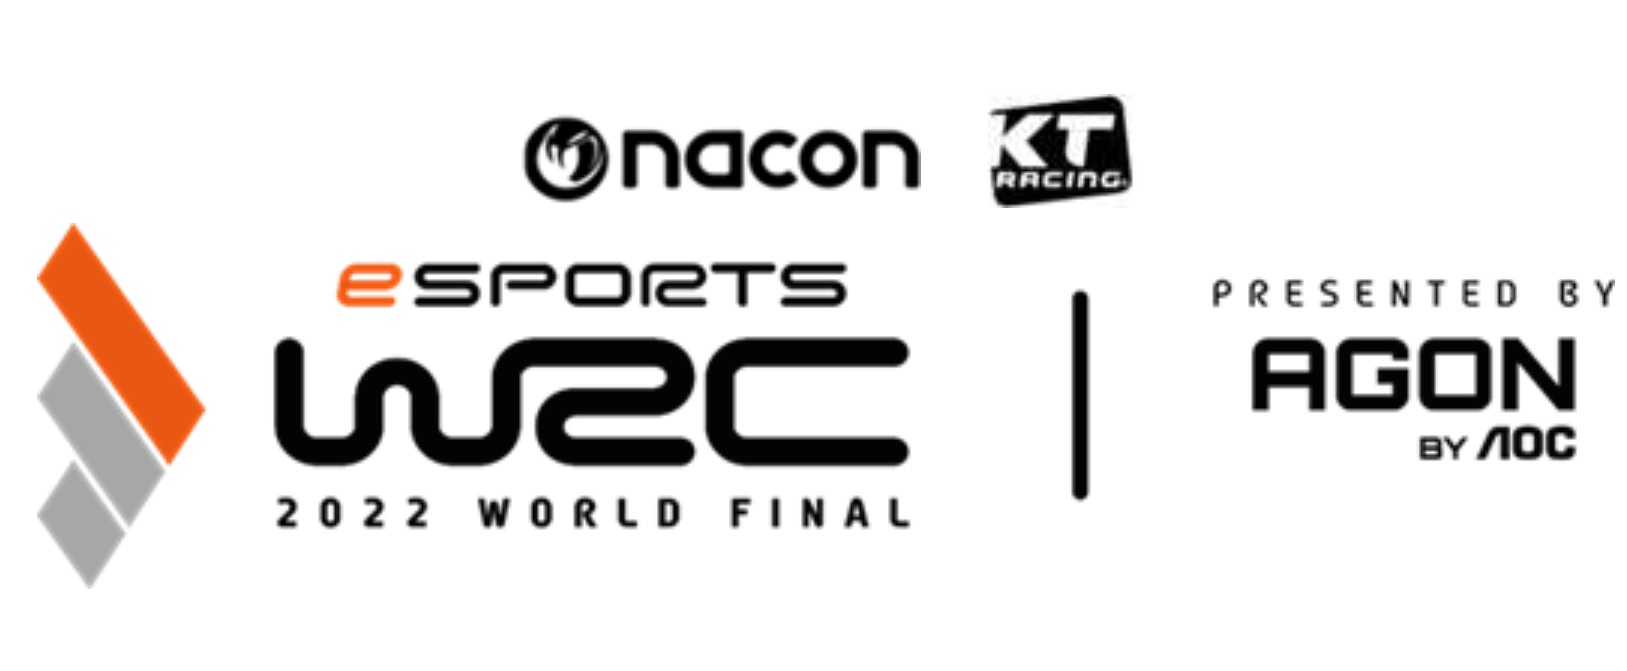 WRC 2022 World Final Presented by AGON by AOC